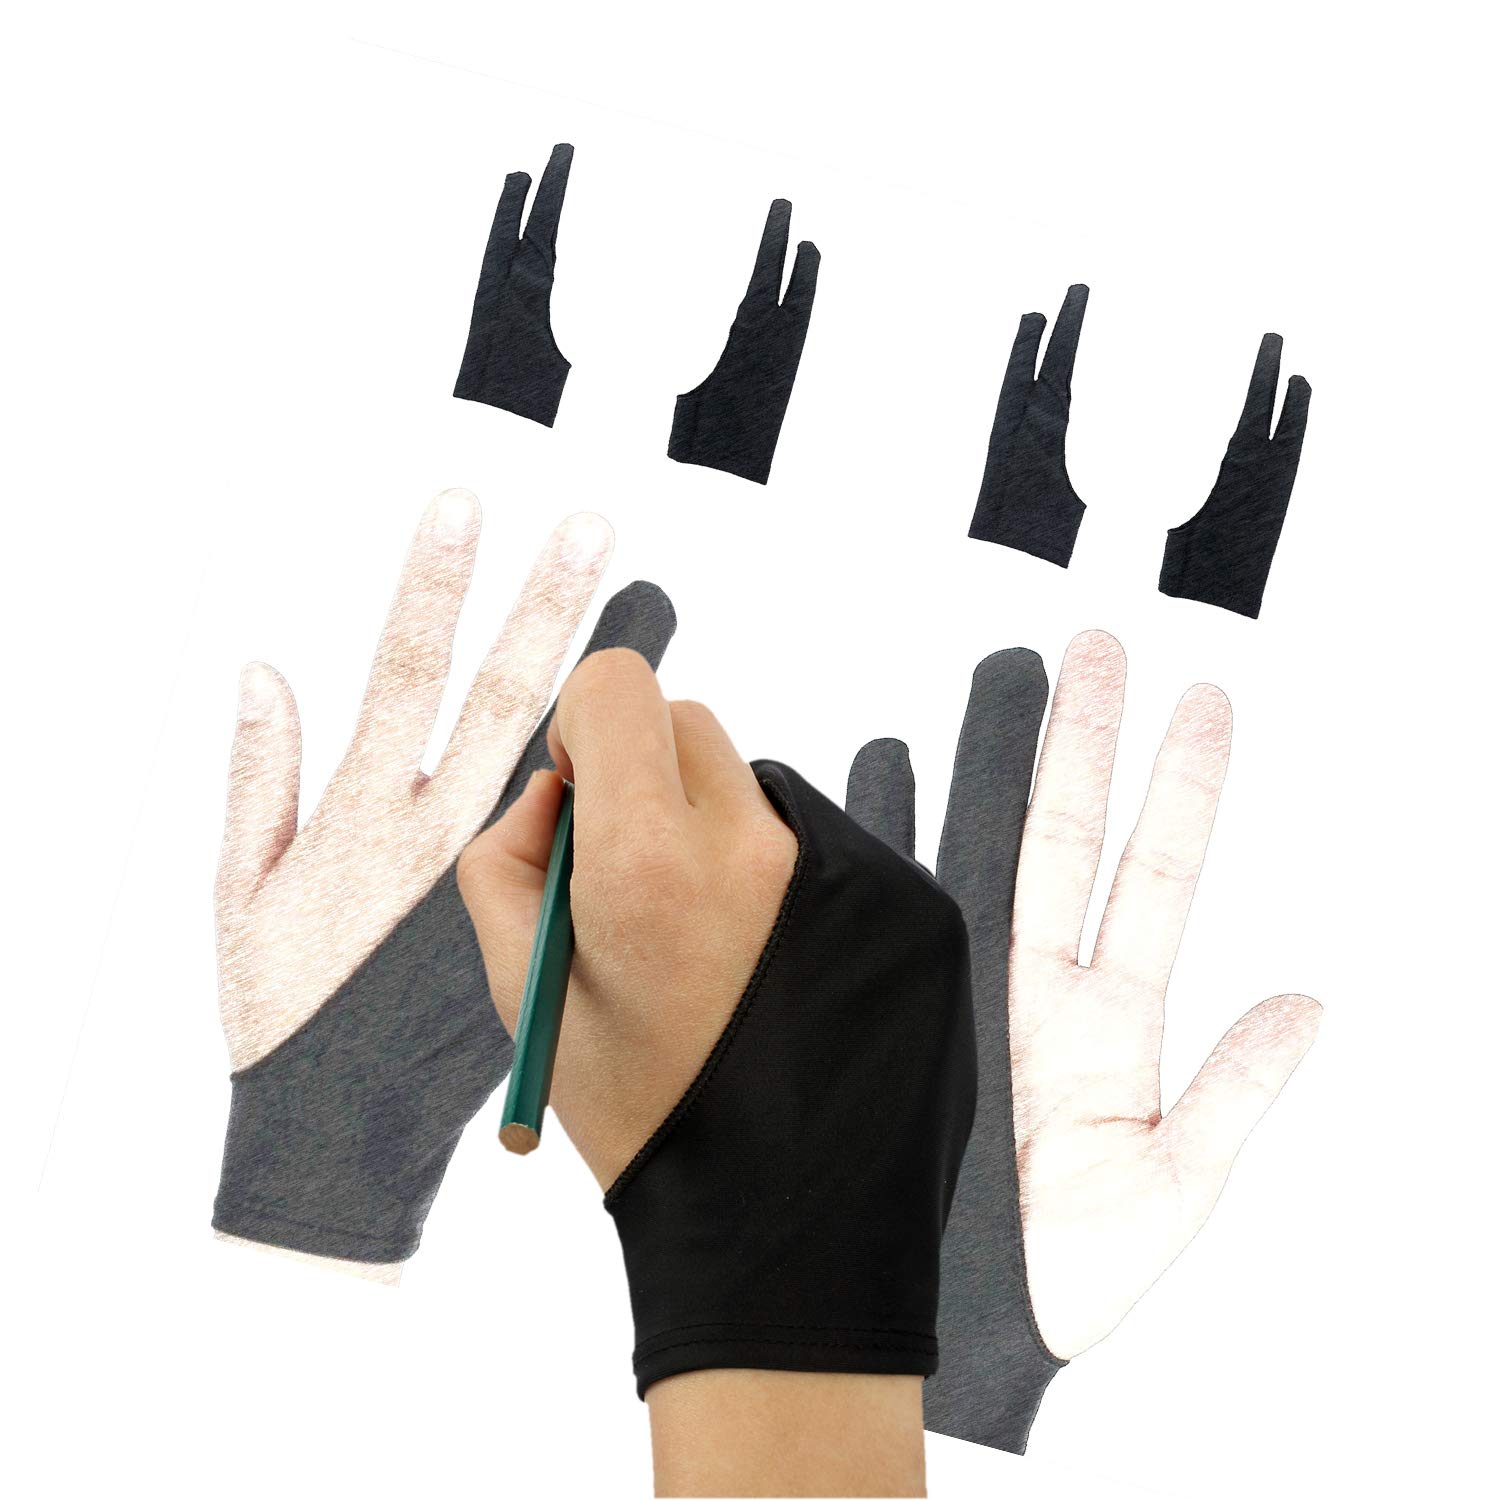 Asonen - Artist Gloves for Drawing 4 Pack, Two Fingers Gloves for